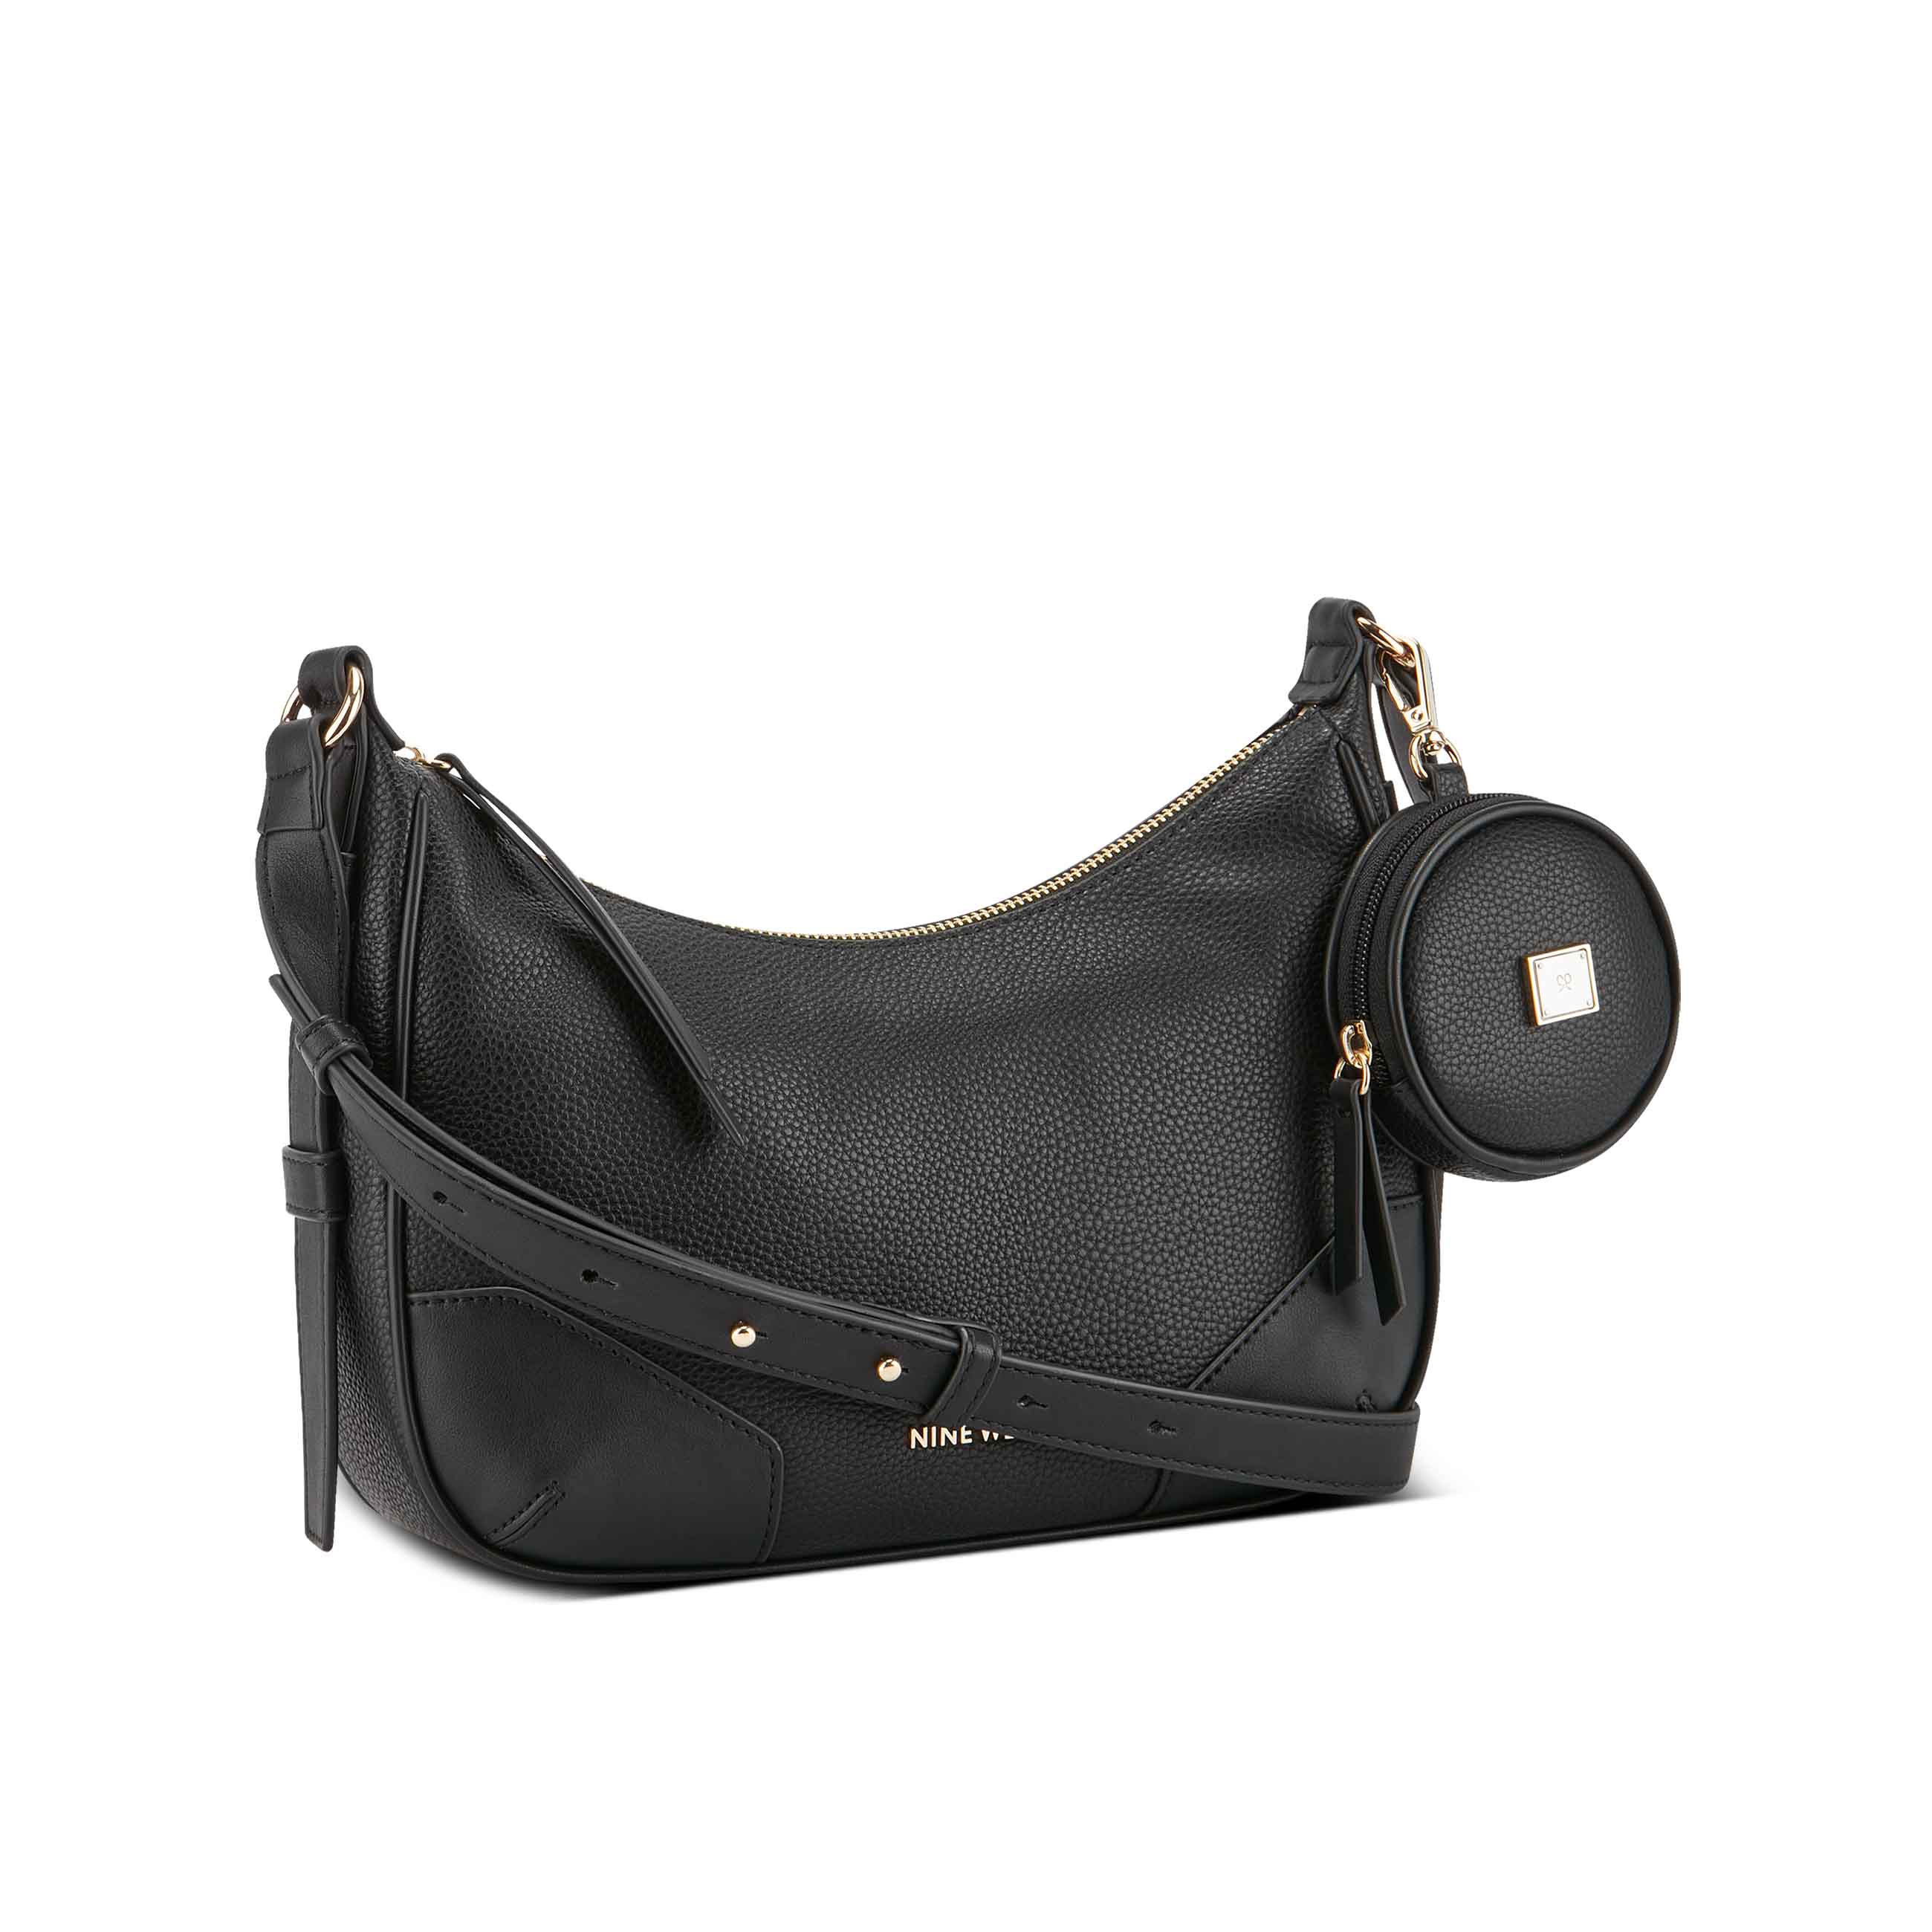 Nine West IT Girl Handbag Purse Shoulder Straps Multiple Pockets white/black/red  | eBay